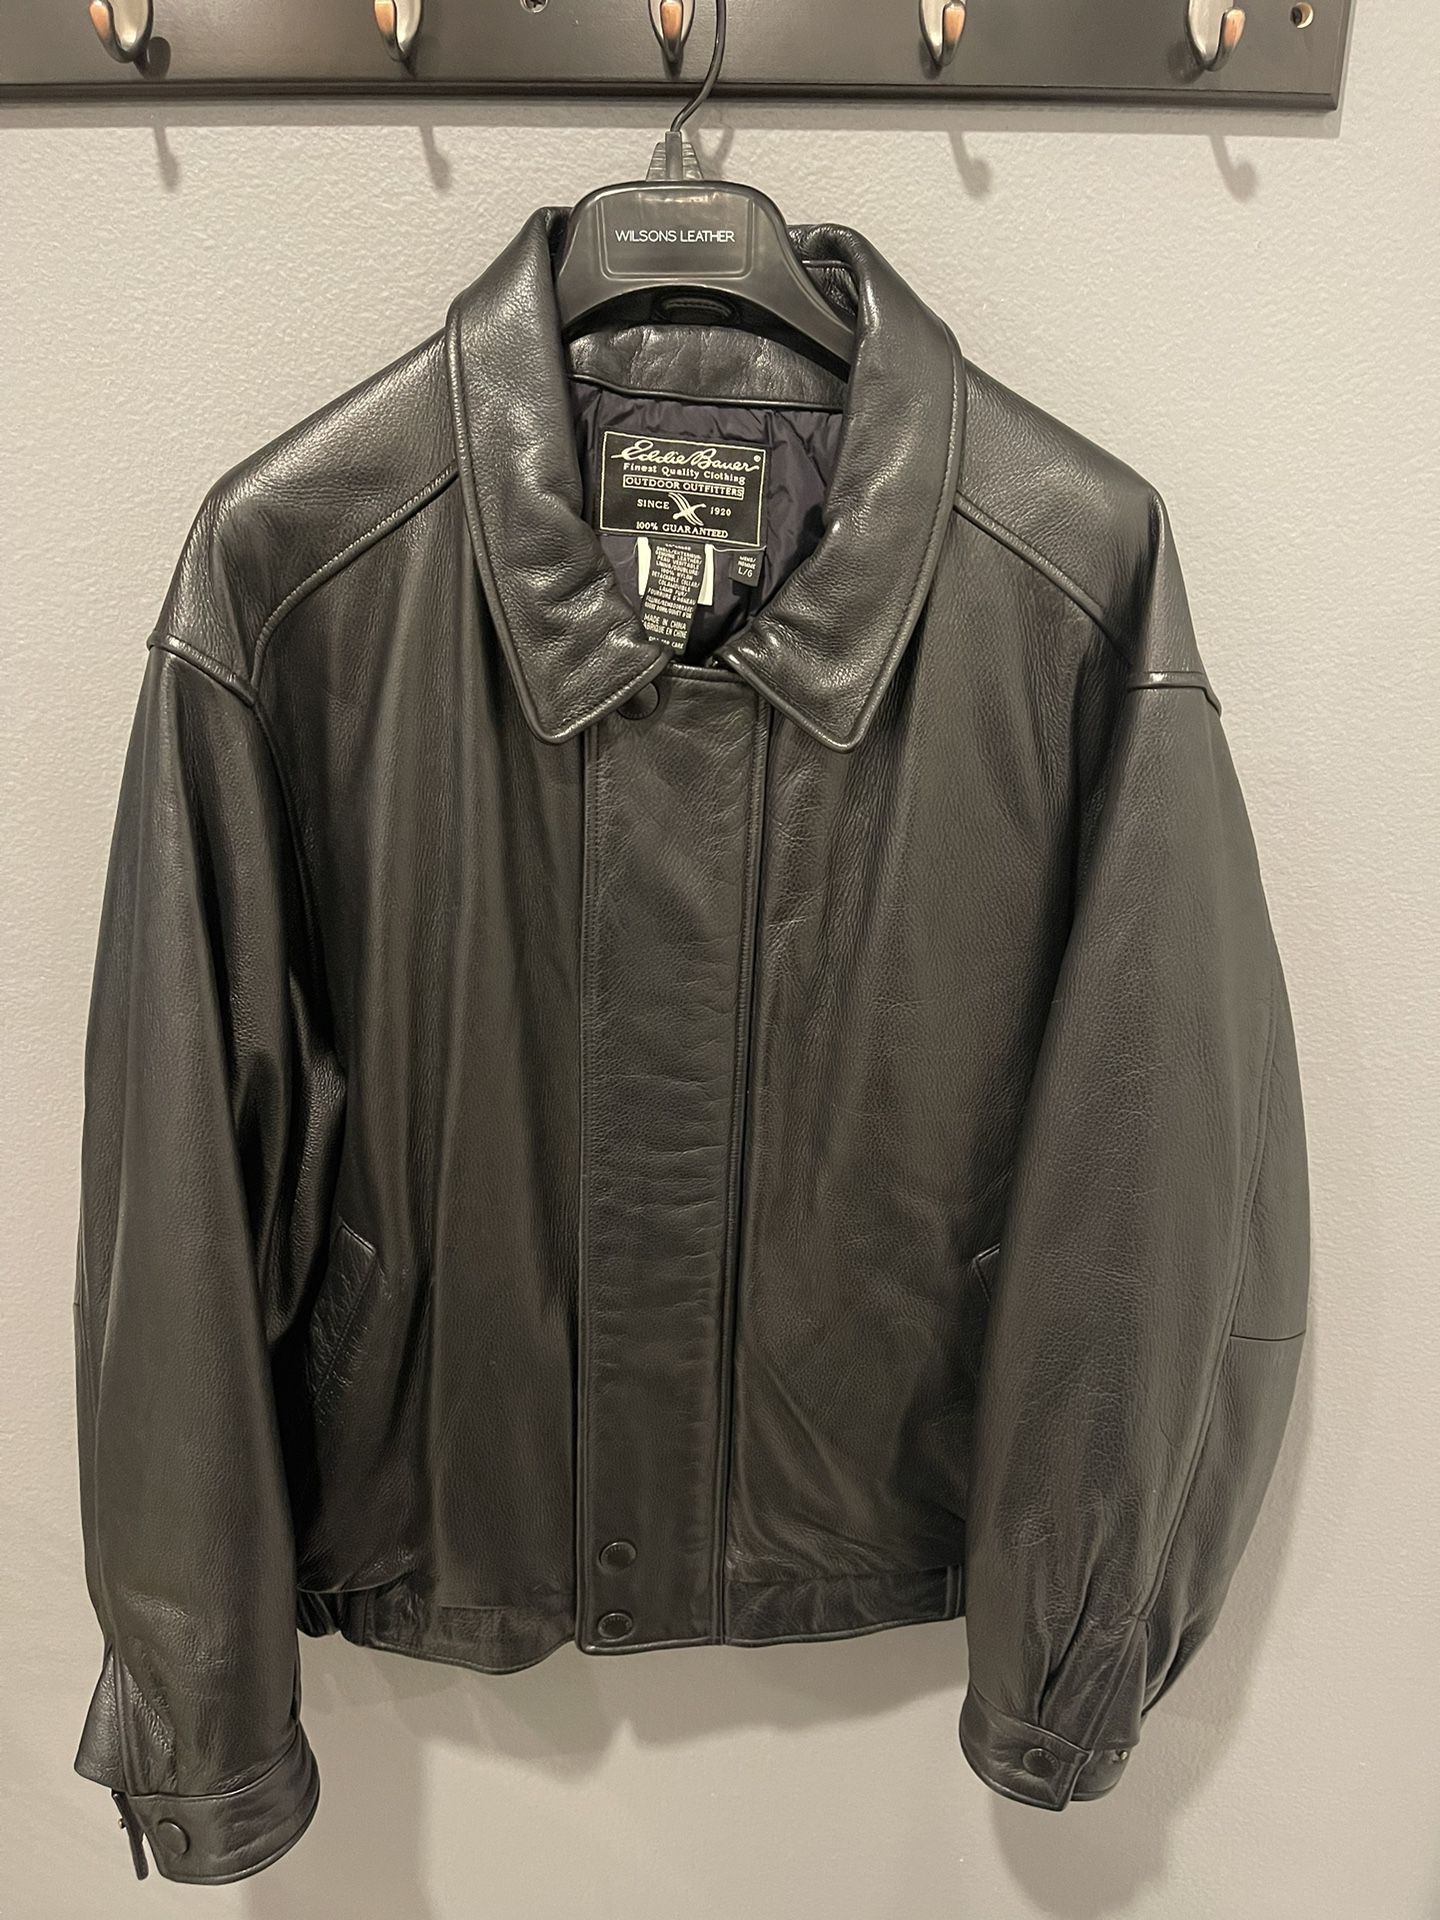 Vintage Eddie Bauer Leather $160